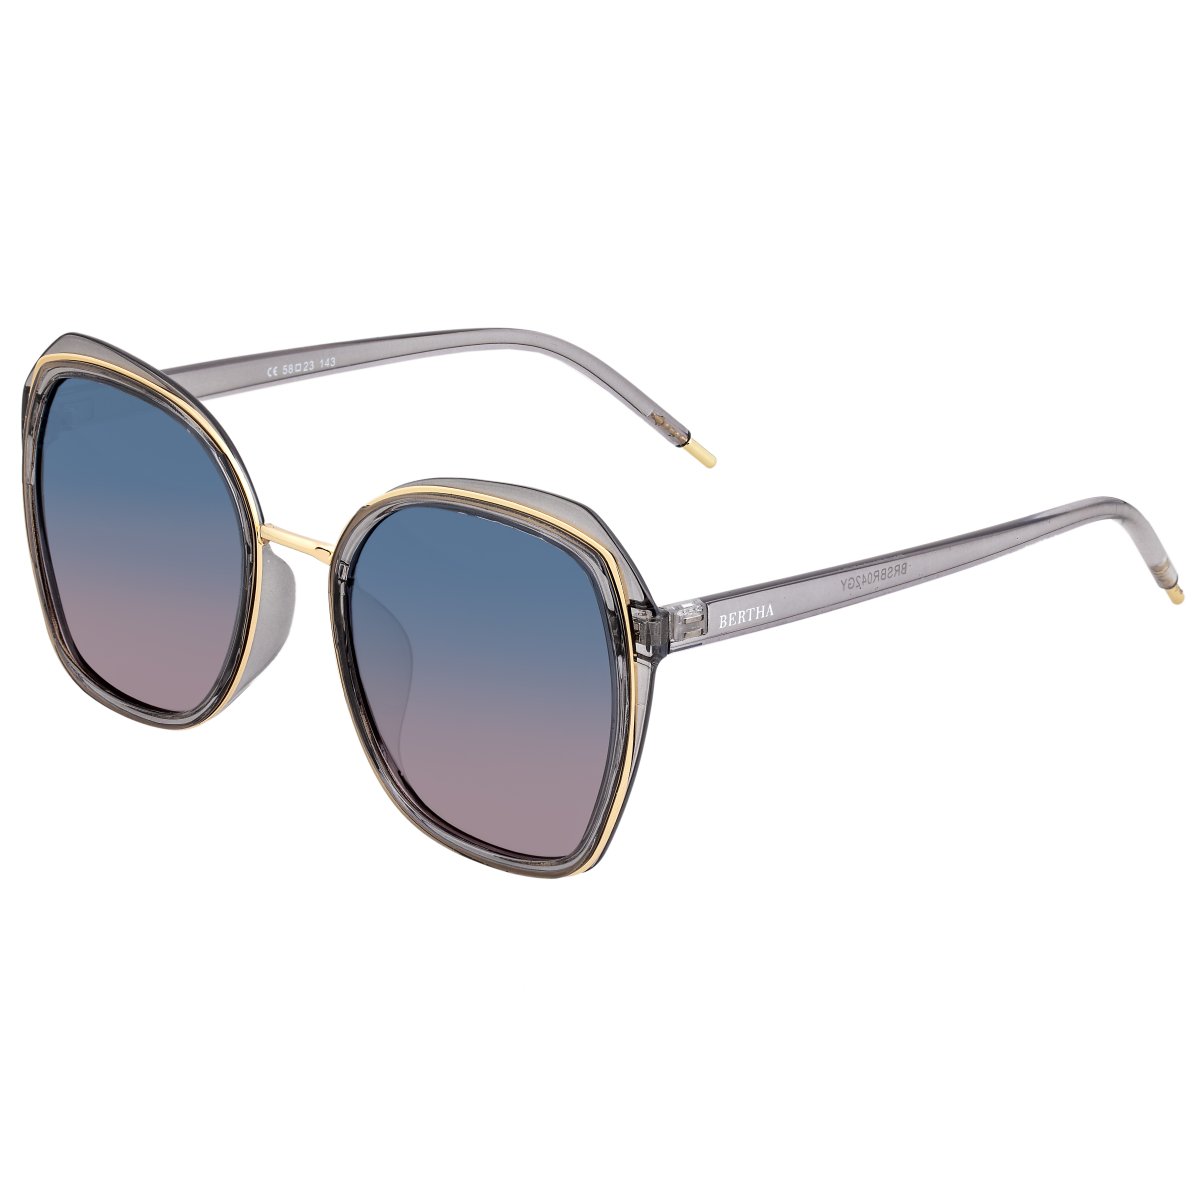 Bertha Jade Polarized Sunglasses - Grey/Blue - BRSBR042GY